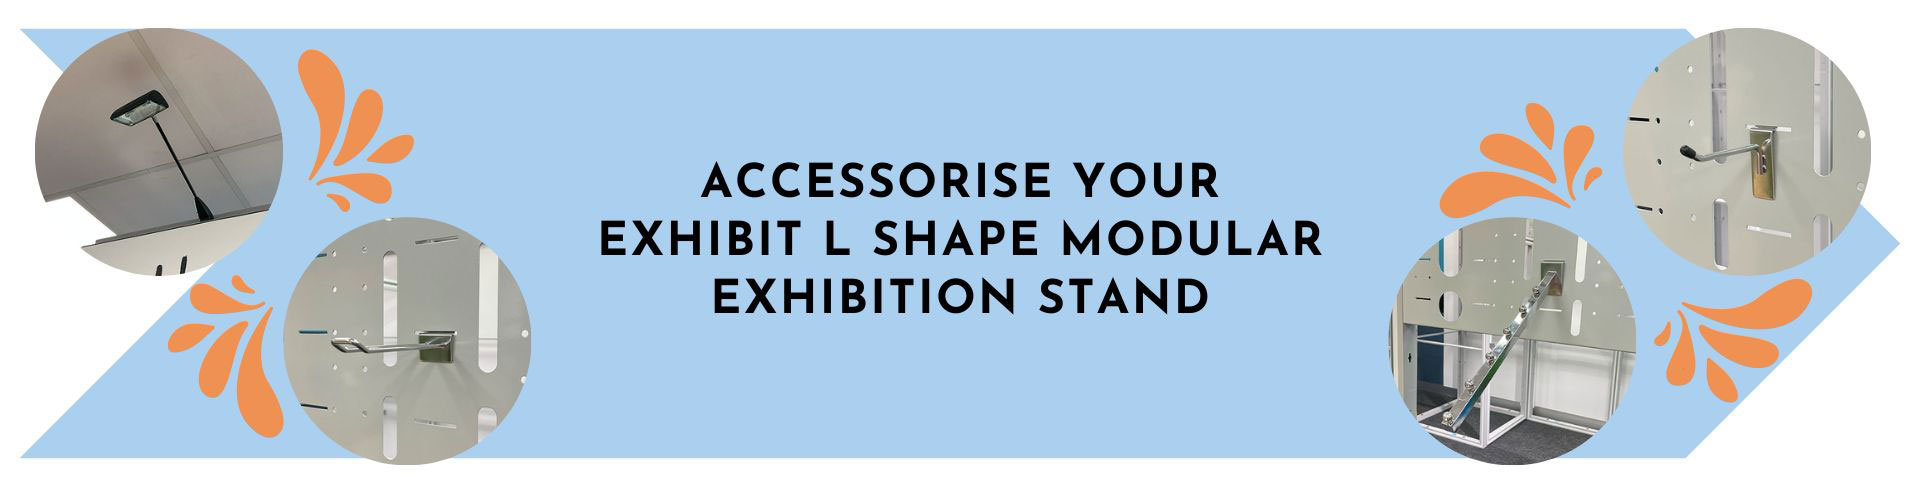 Exhibit Modular Exhibition Stand Accessories